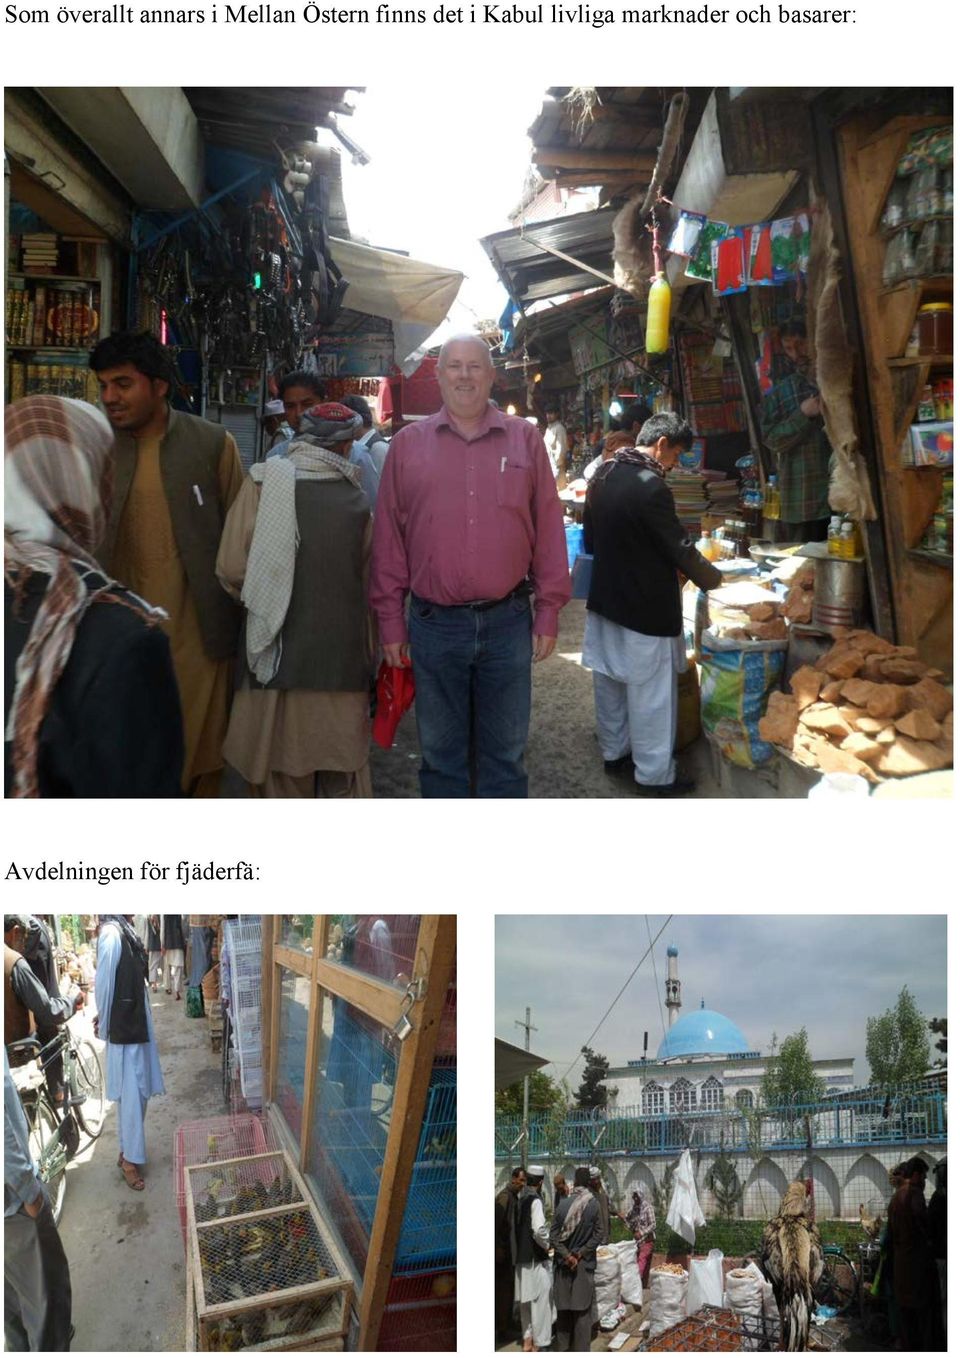 Kabul livliga marknader och